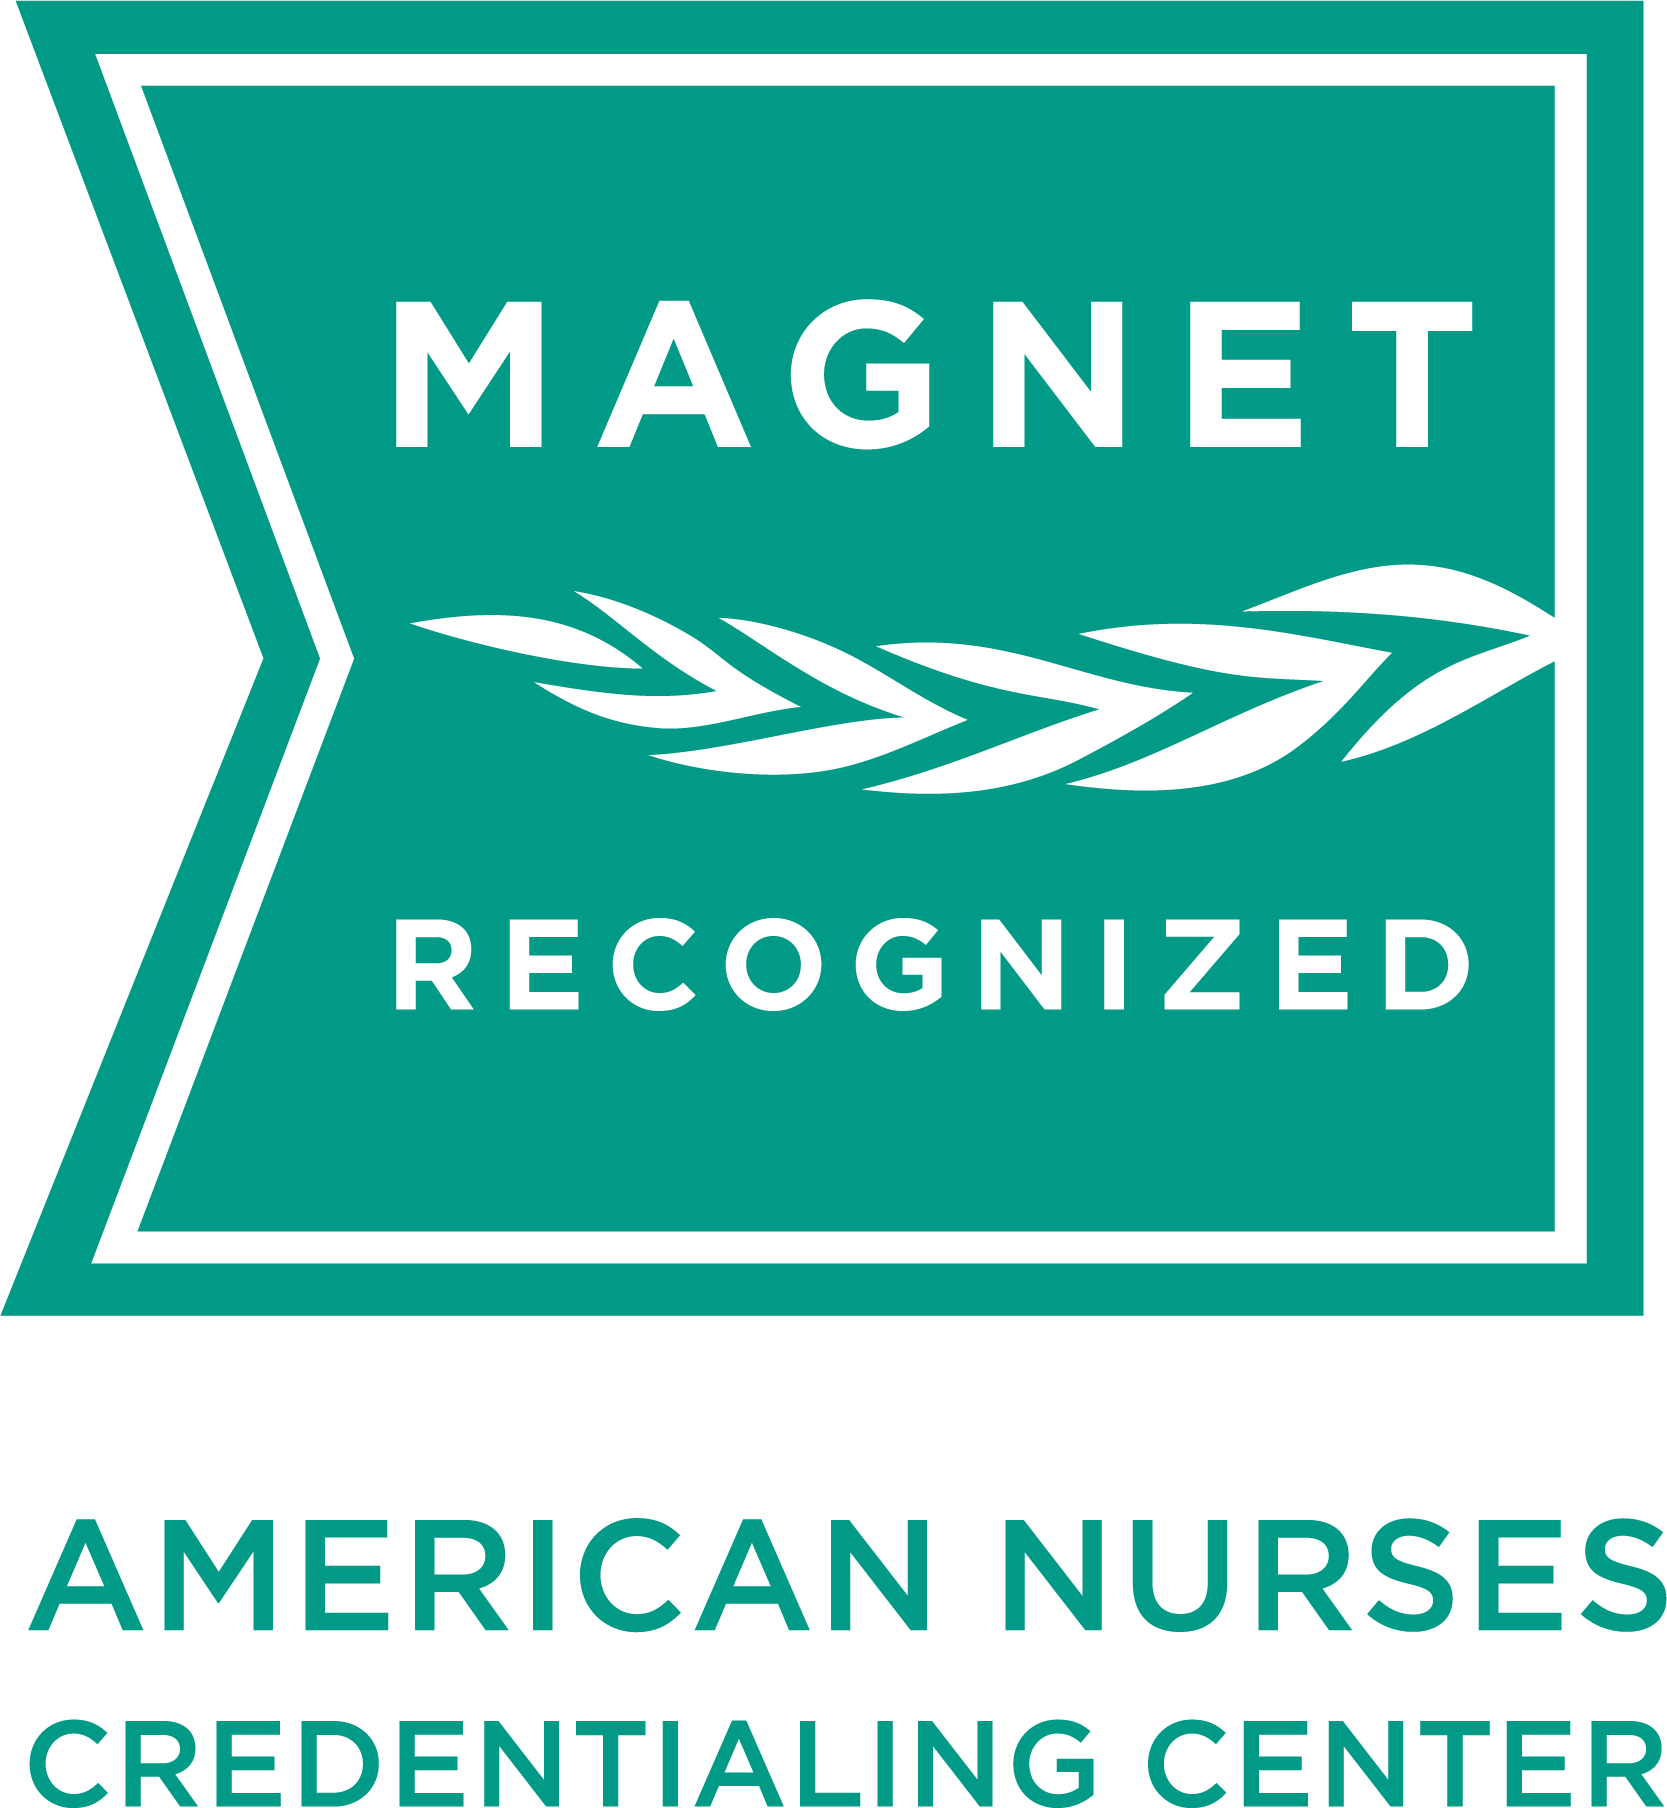 Magnet Hospital